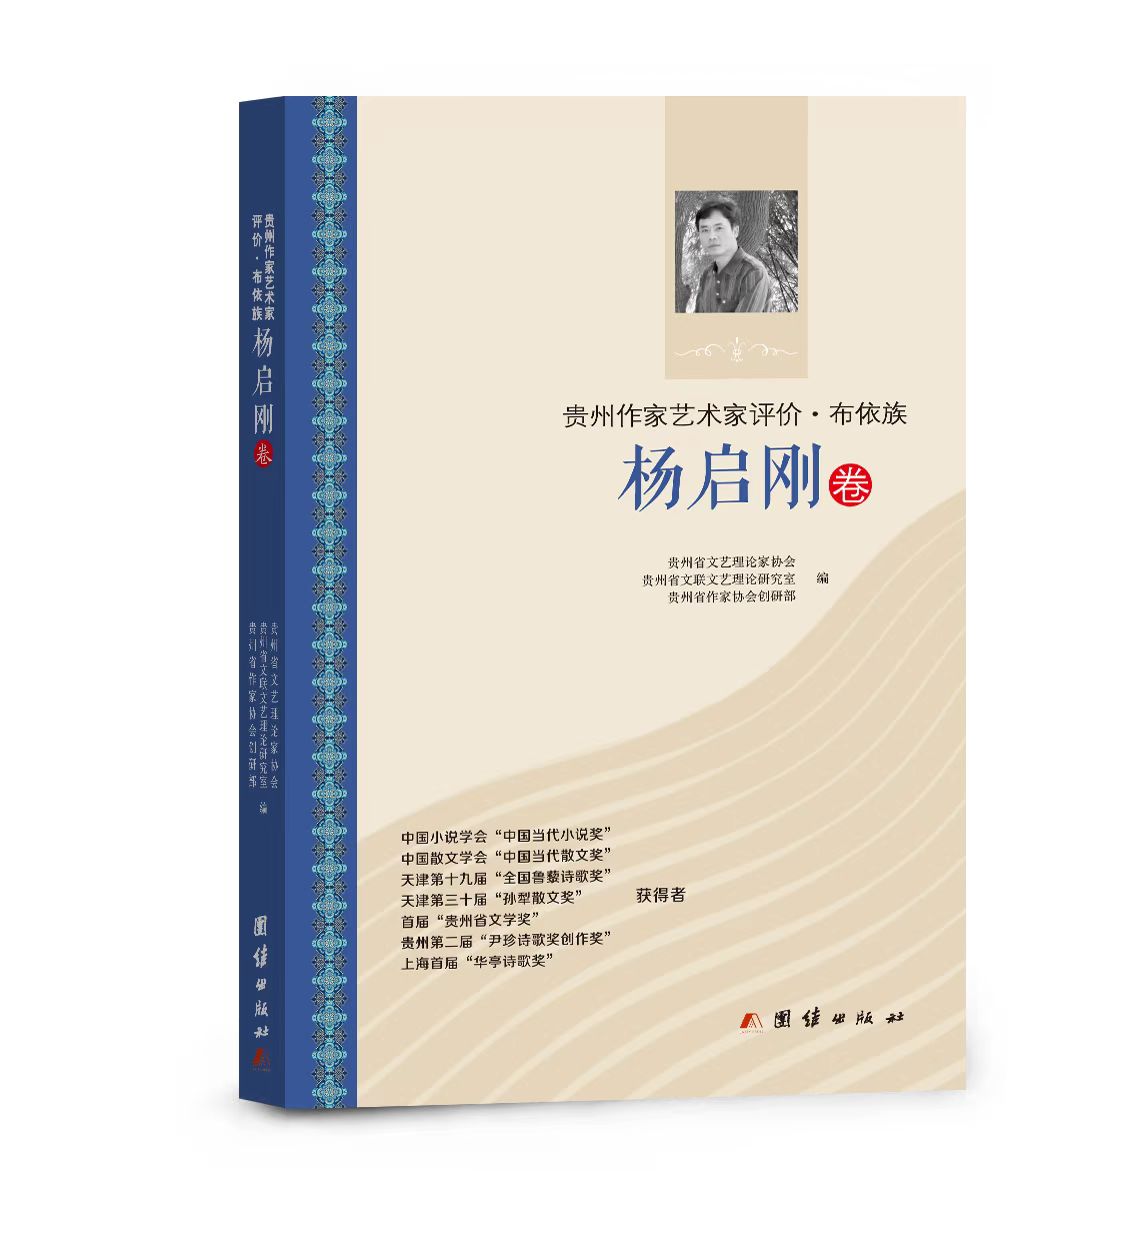 文学评论集《贵州作家艺术家评价•布依族杨启刚卷》封面